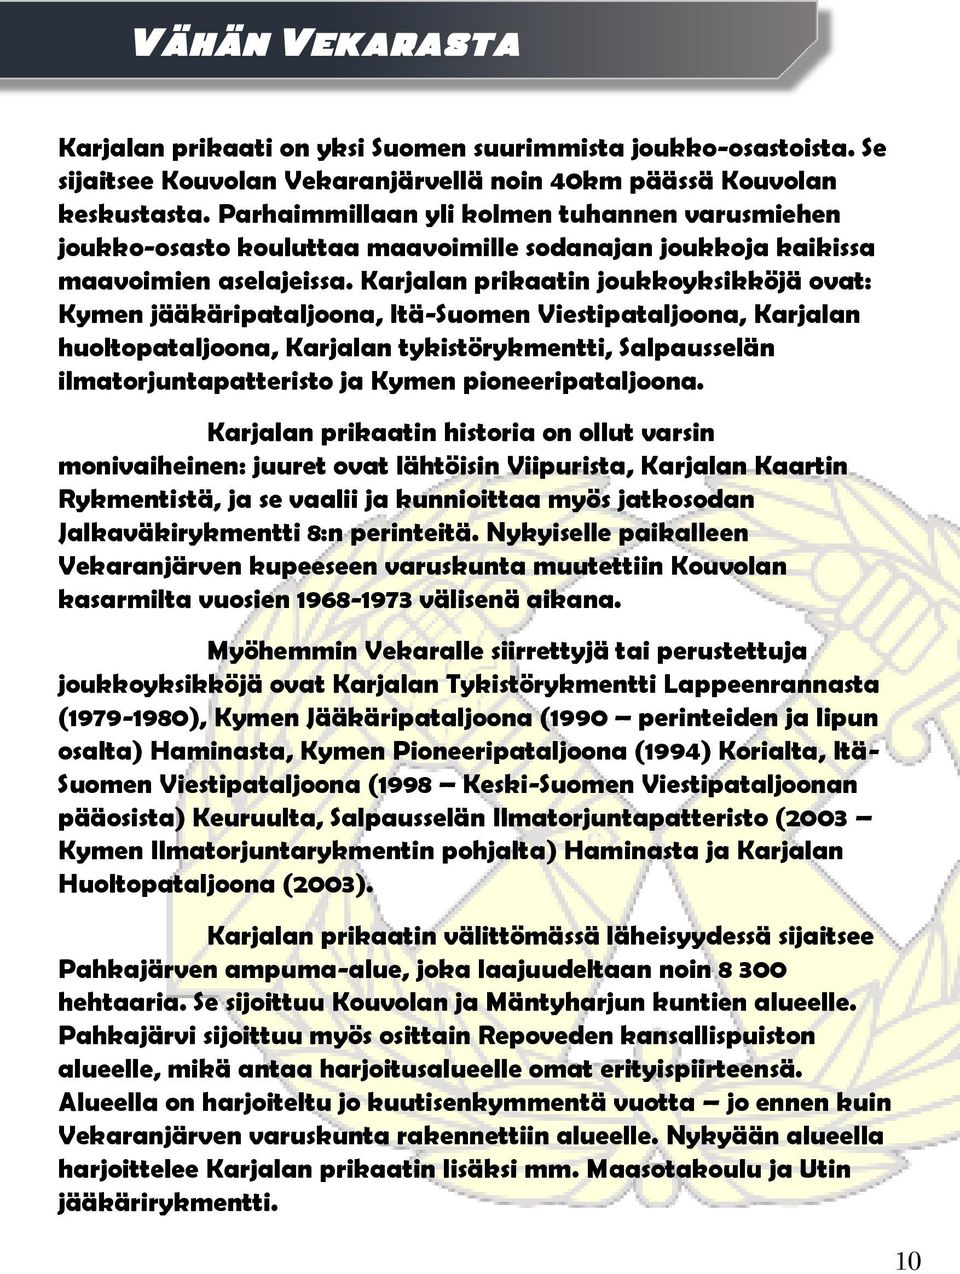 Karjalan prikaatin joukkoyksikköjä ovat: Kymen jääkäripataljoona, Itä-Suomen Viestipataljoona, Karjalan huoltopataljoona, Karjalan tykistörykmentti, Salpausselän ilmatorjuntapatteristo ja Kymen